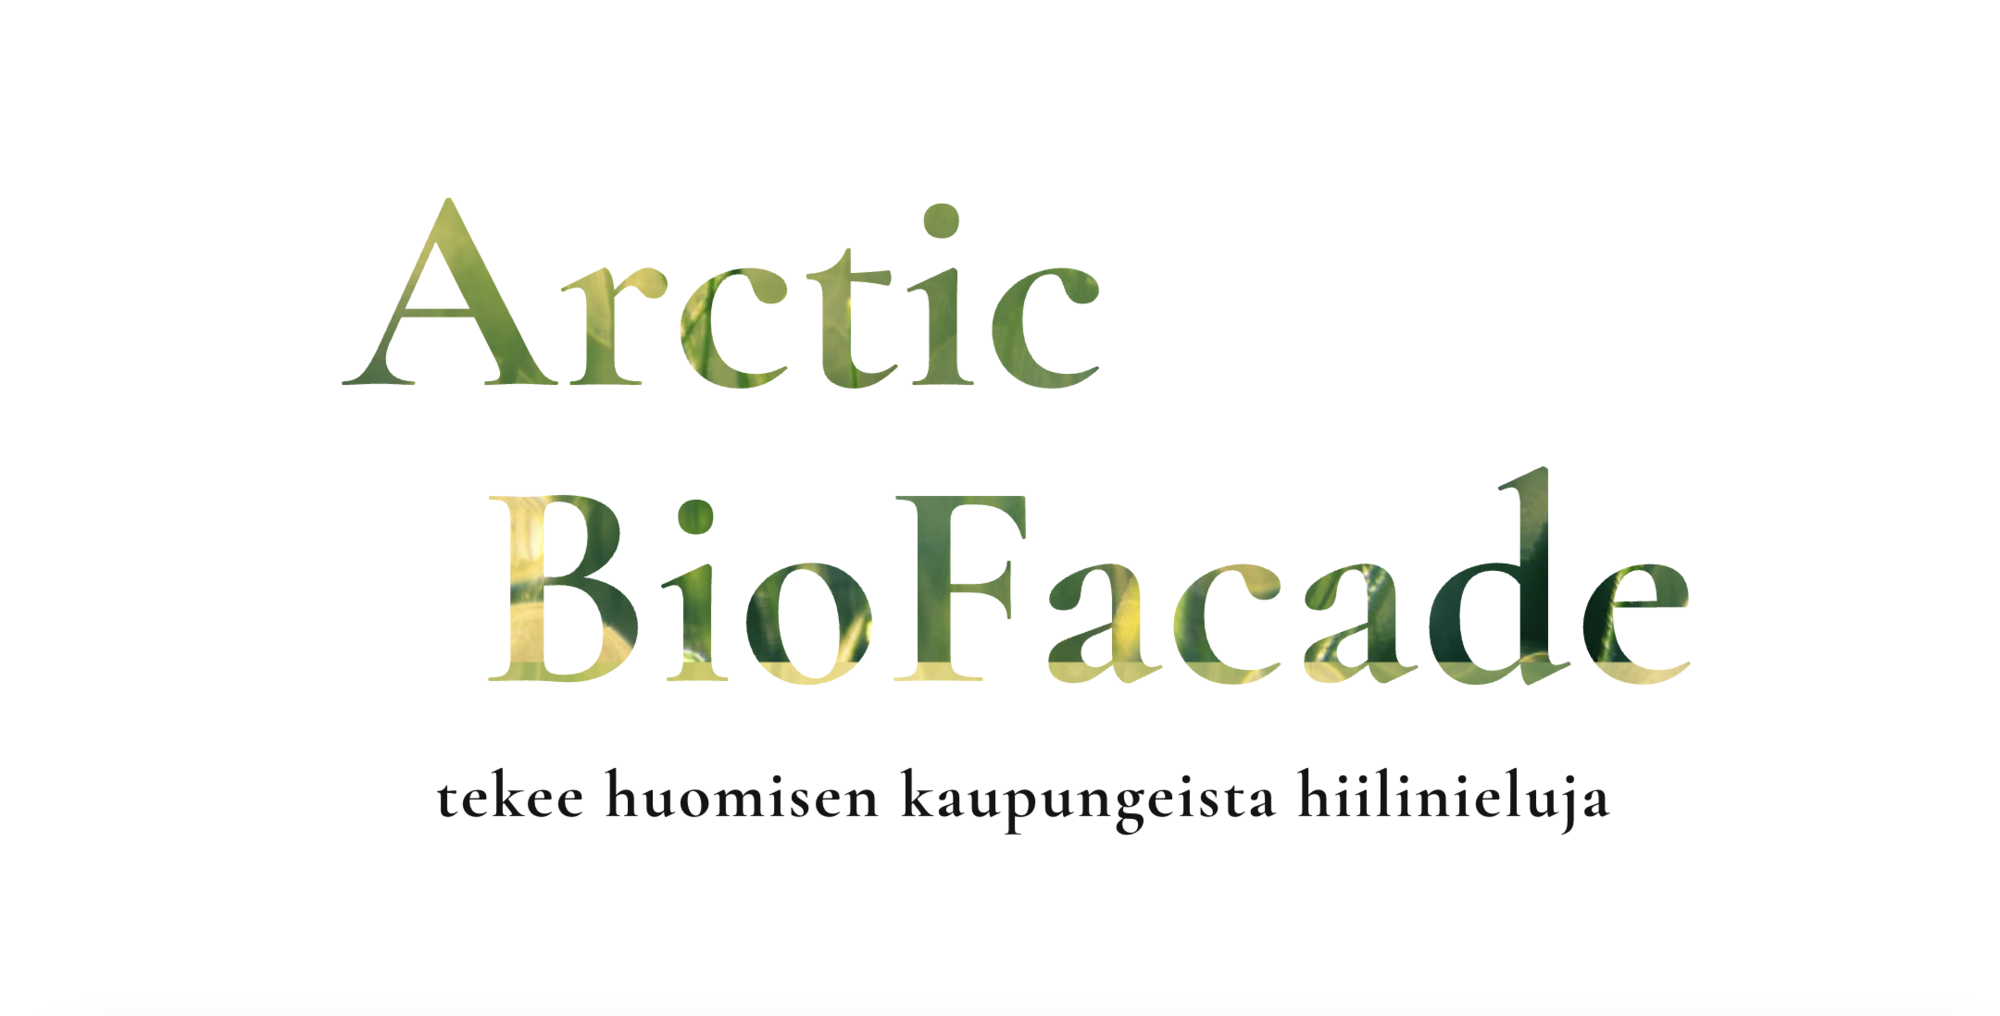 Arctic BioFacade tekee huomisen kaupungeista hiilinieluja